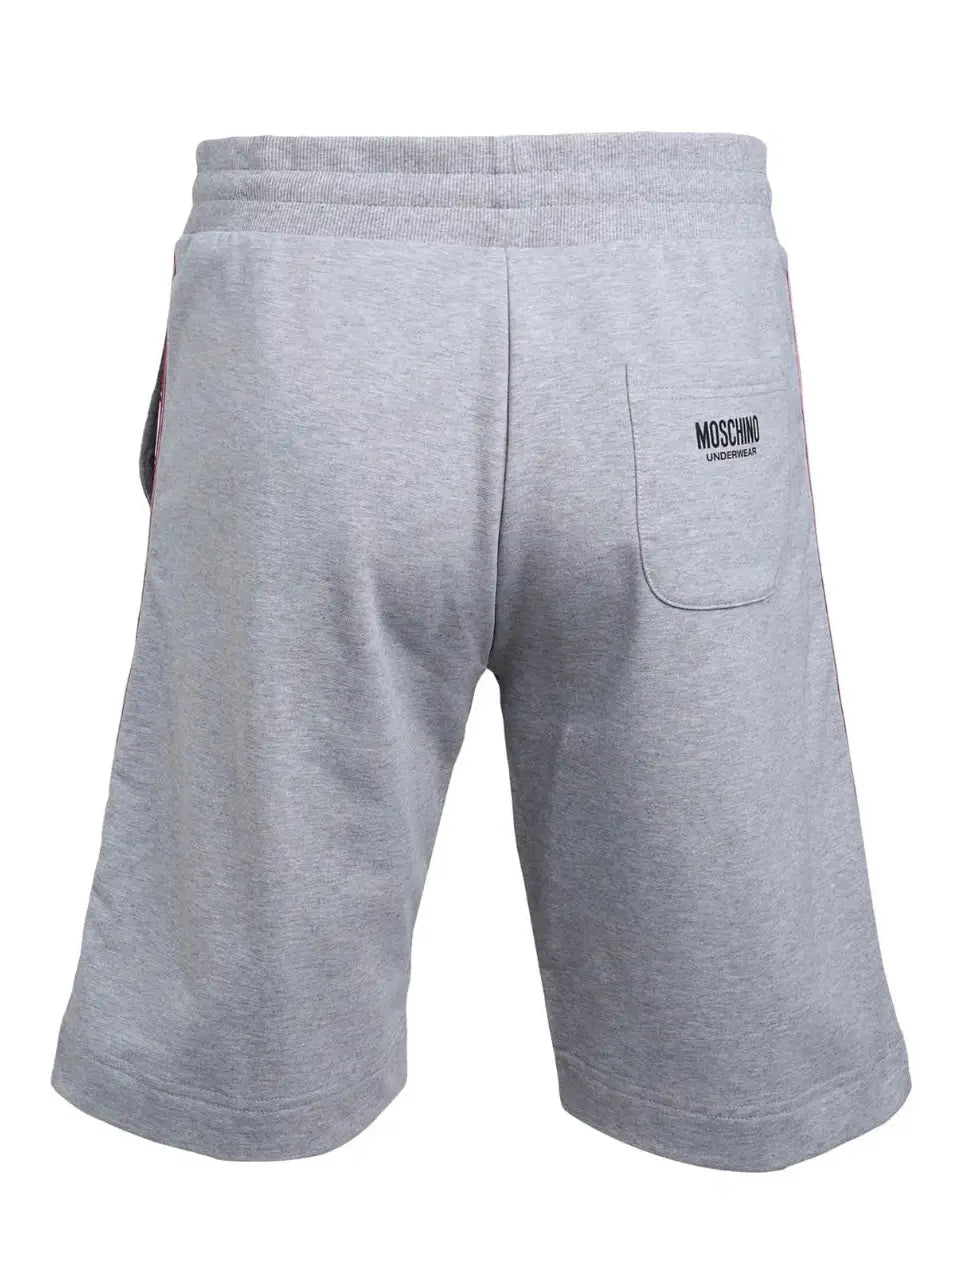 Moschino Grey Tapered Shorts